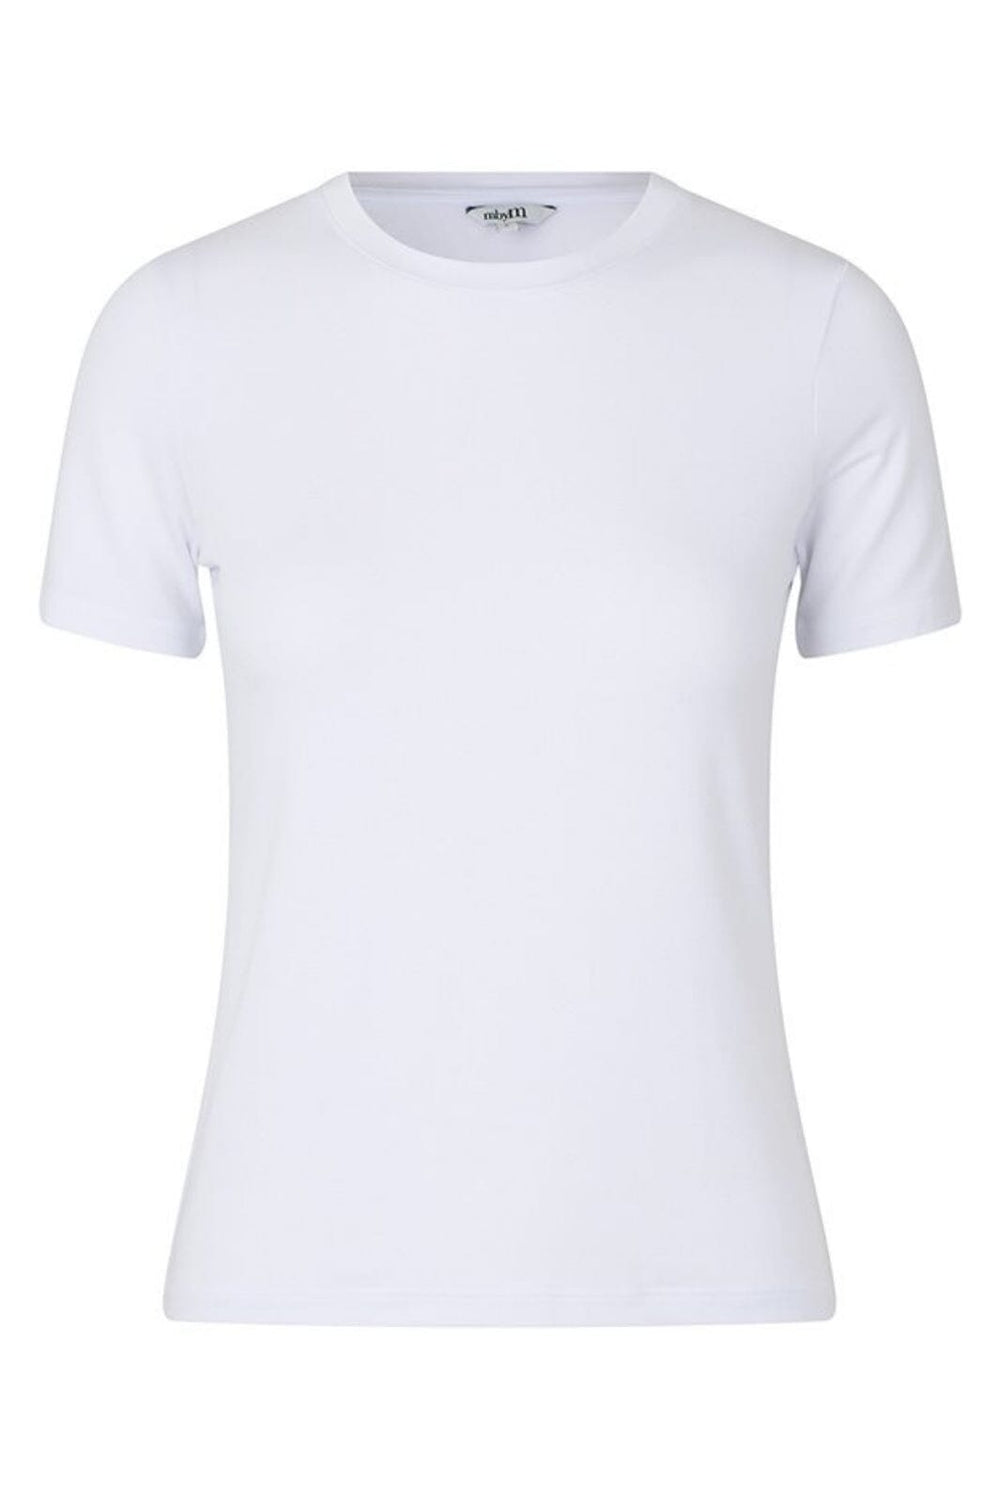 MbyM - Julie-M - Optical White T-shirts 